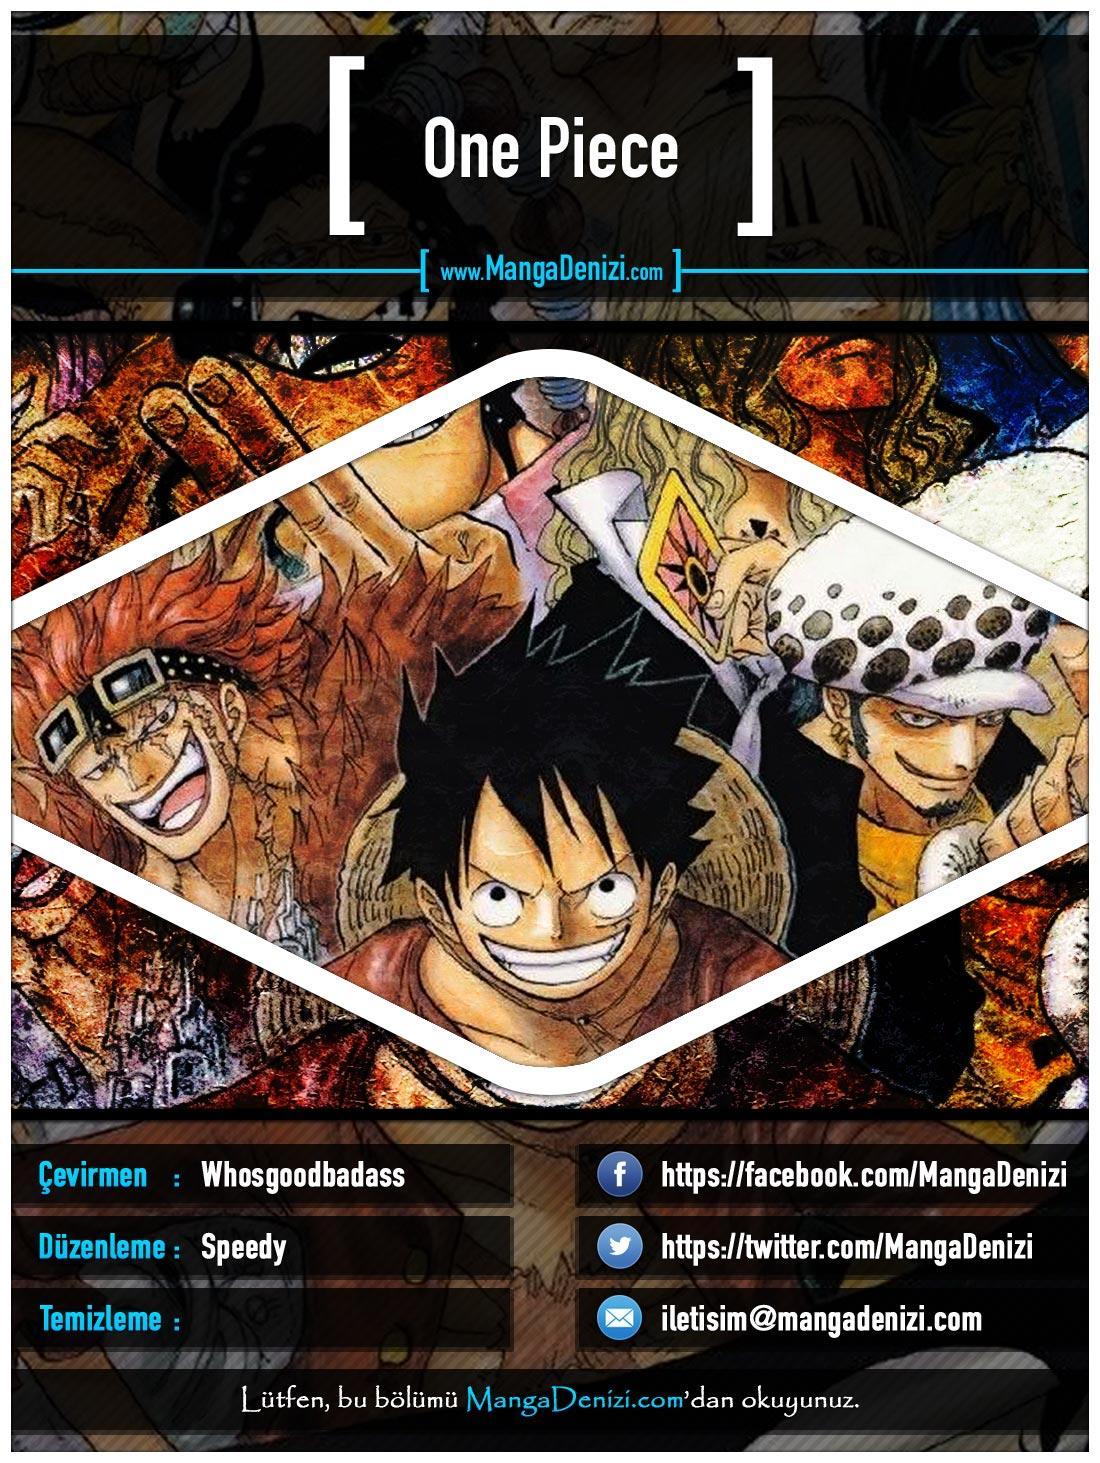 One Piece [Renkli] mangasının 0514 bölümünün 1. sayfasını okuyorsunuz.